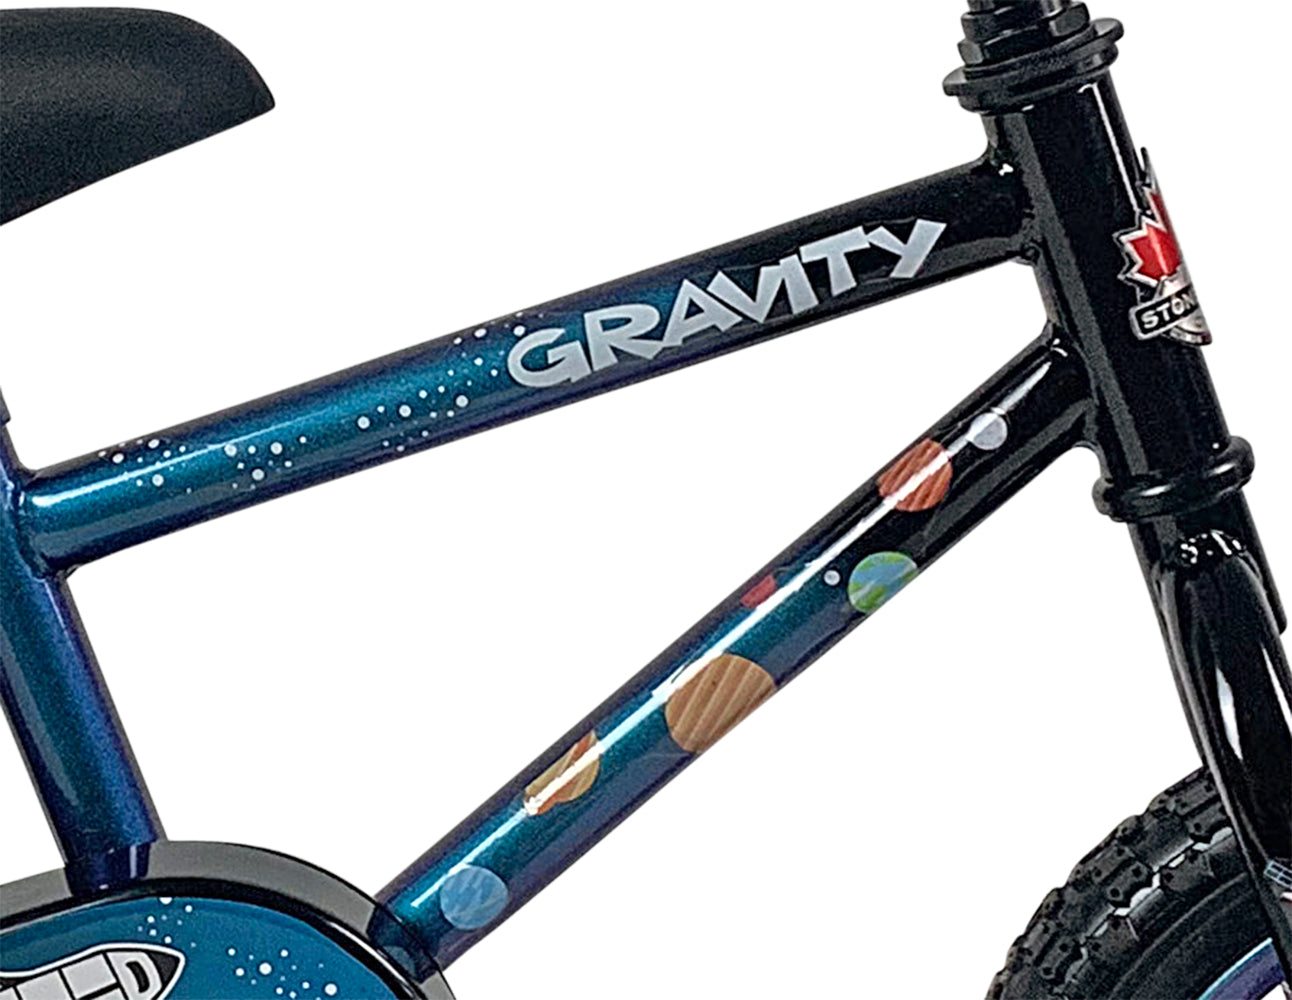 Vélo Gravity 12" avec casque